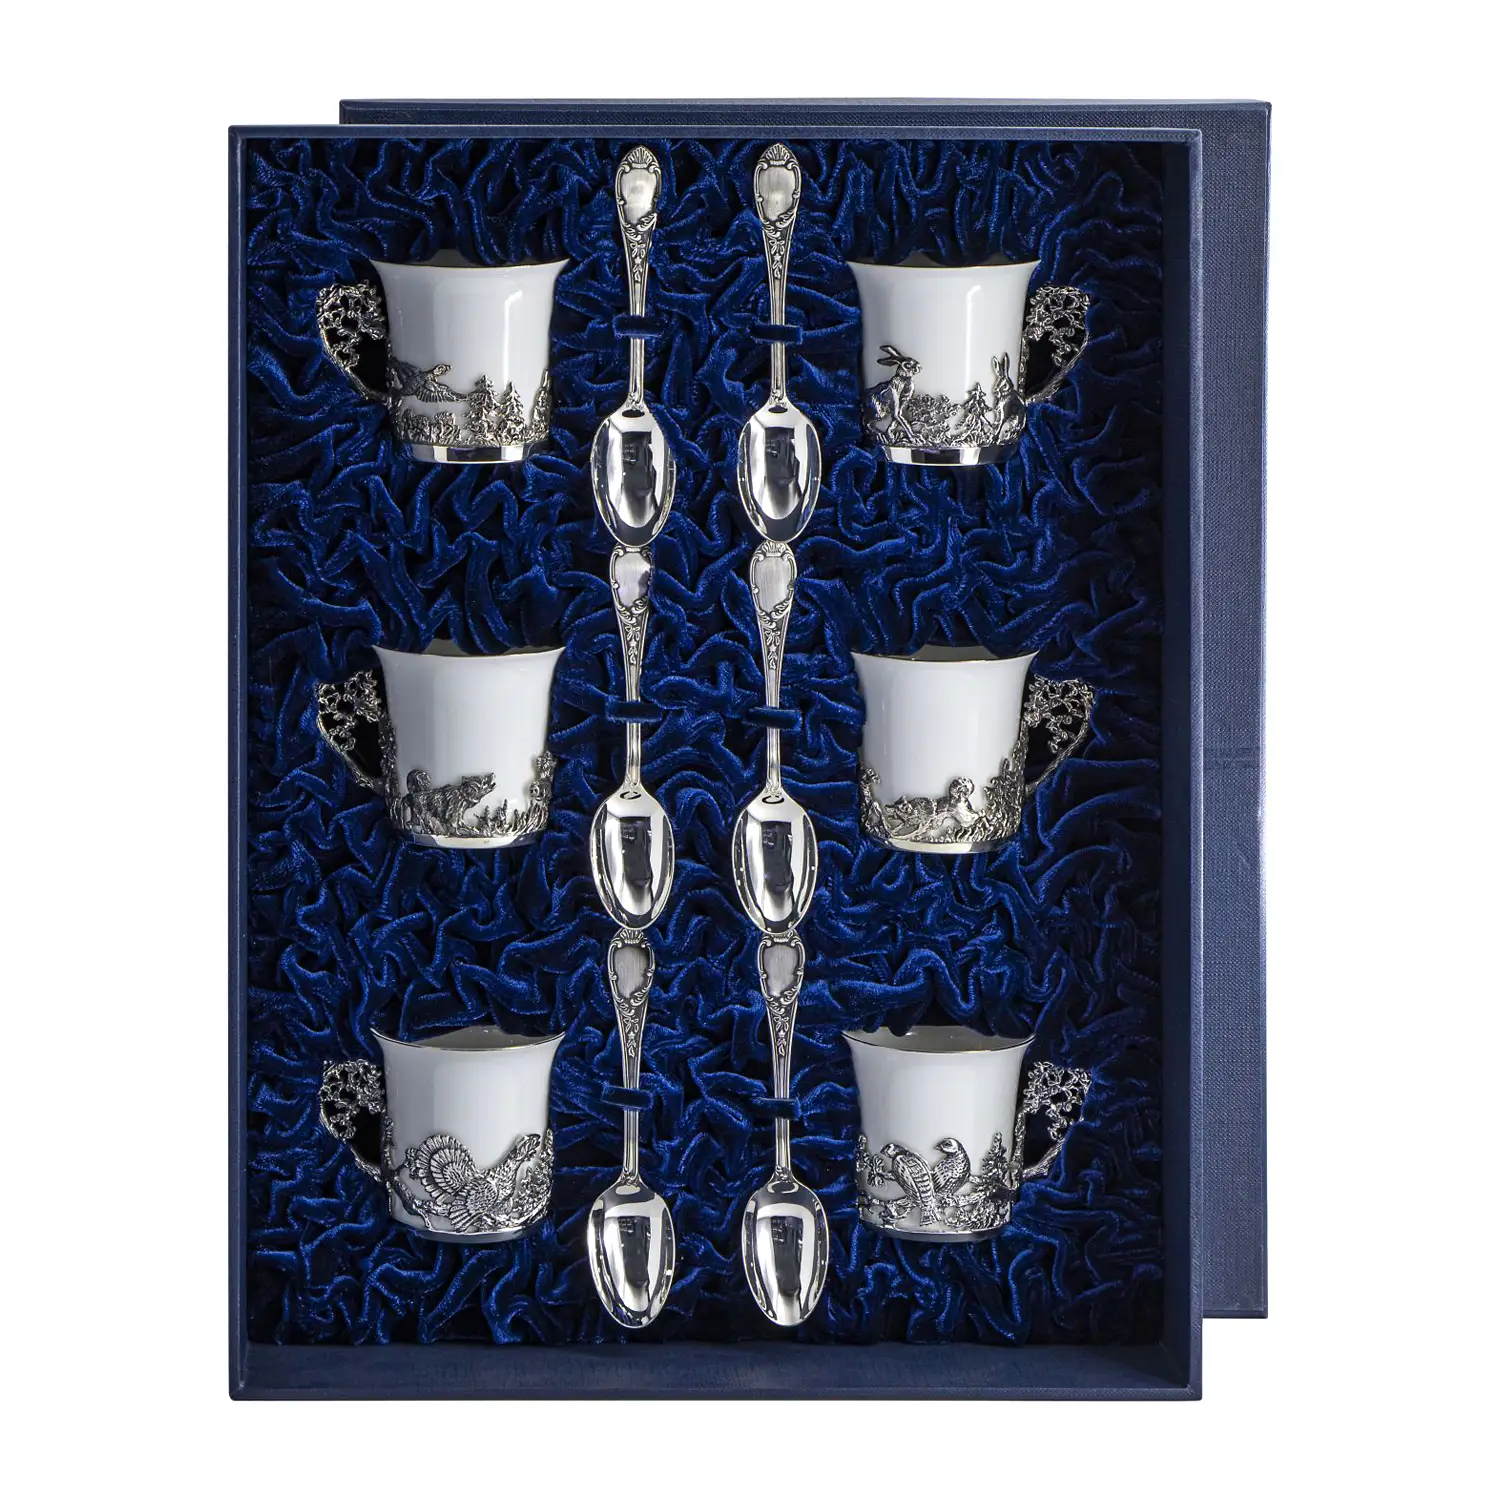 Набор кофейных чашек Охотничьи: ложка, чашка (Серебро 925) набор кофейных чашек сердечко ложка чашка серебро 925